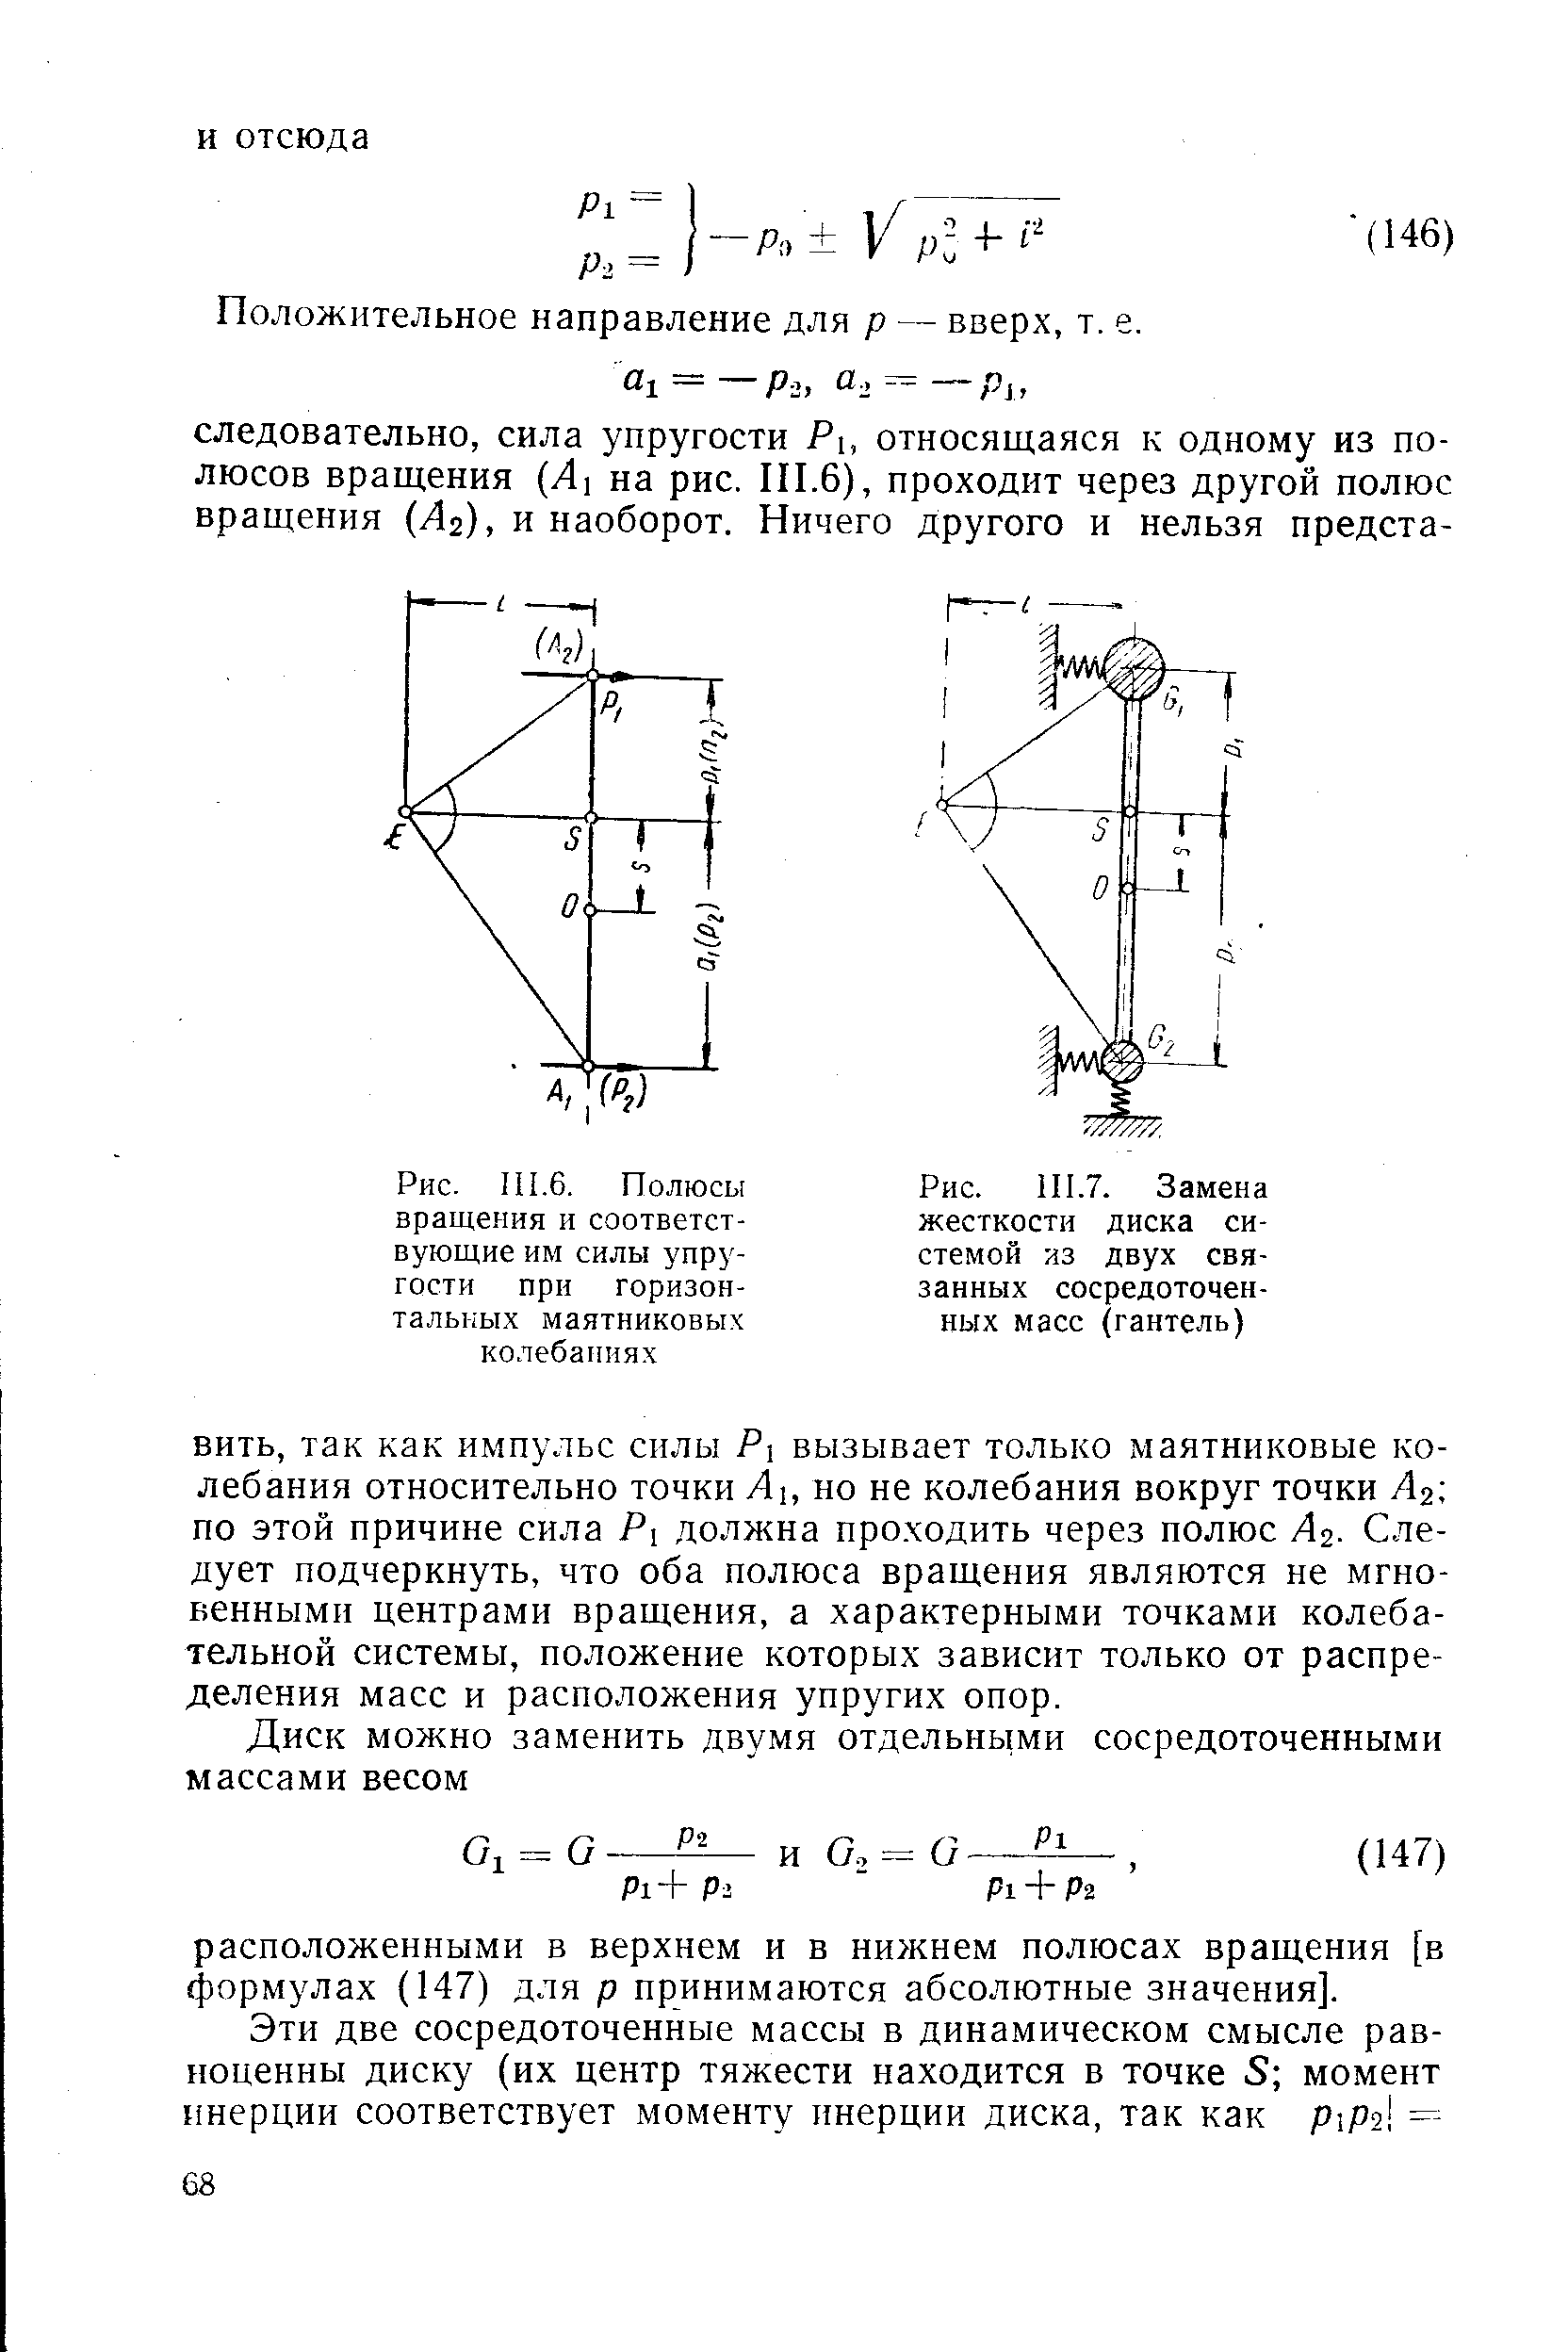 Рис. 111.7. Замена жесткости диска системой из двух связанных сосредоточенных масс (гантель)
